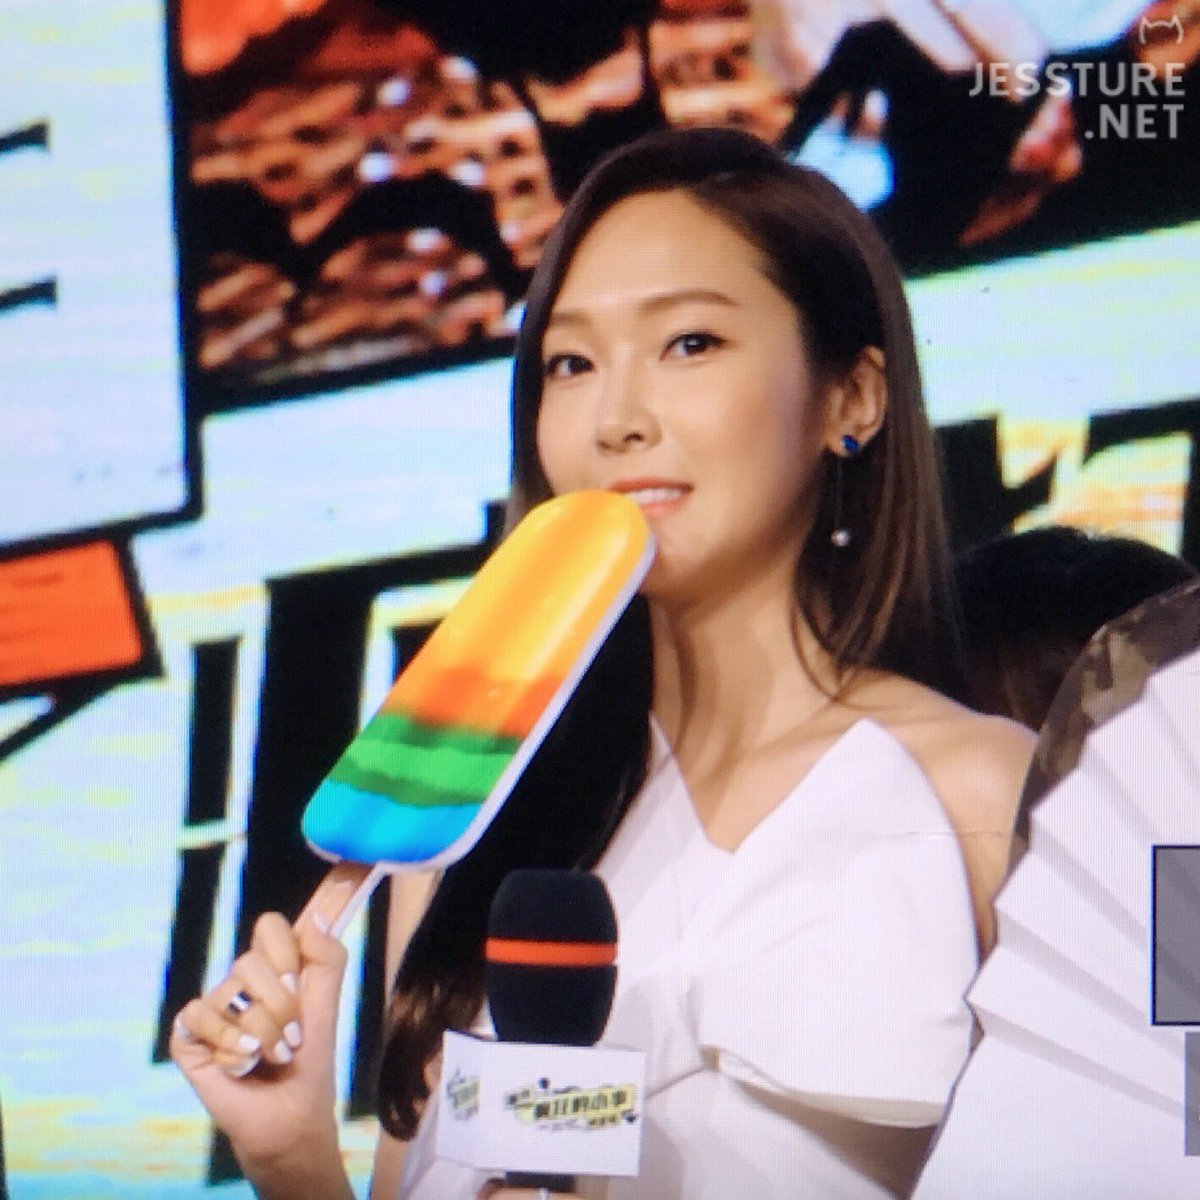 [PIC][08-08-2016]Jessica khởi hành đi Bắc Kinh – Trung Quốc để tham dự chuỗi hoạt động quảng bá cho Movie "I Love That Crazy Little Thing" vào chiều nay CpZqFU5VMAAUvlg